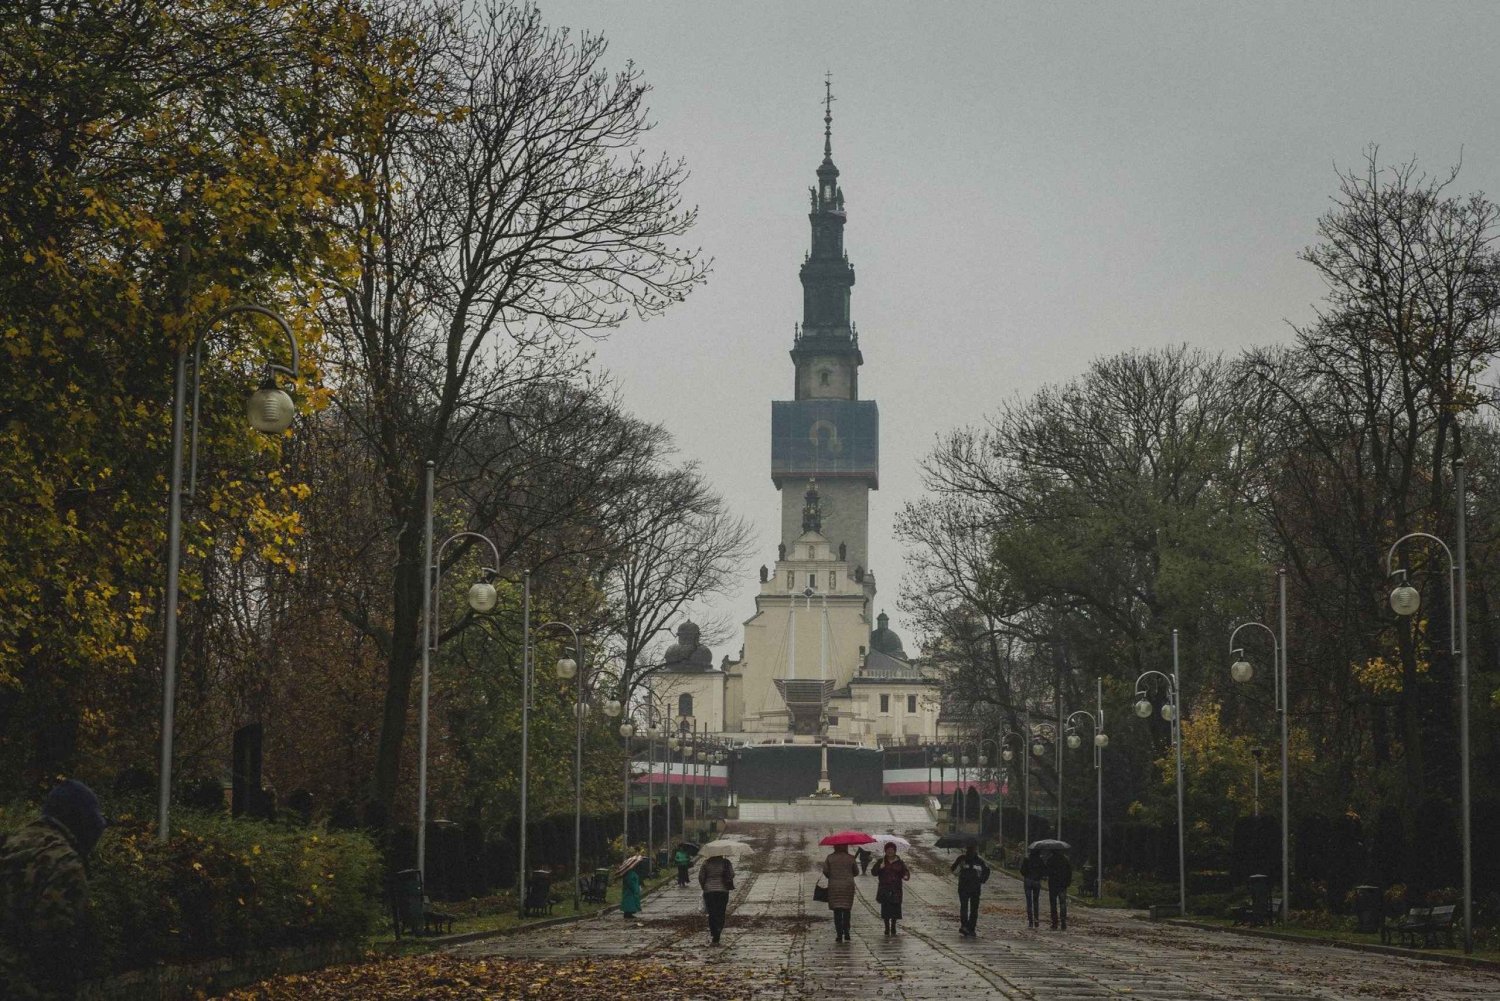 Krakovasta: Częstochowa 'Musta Madonna' päiväretki